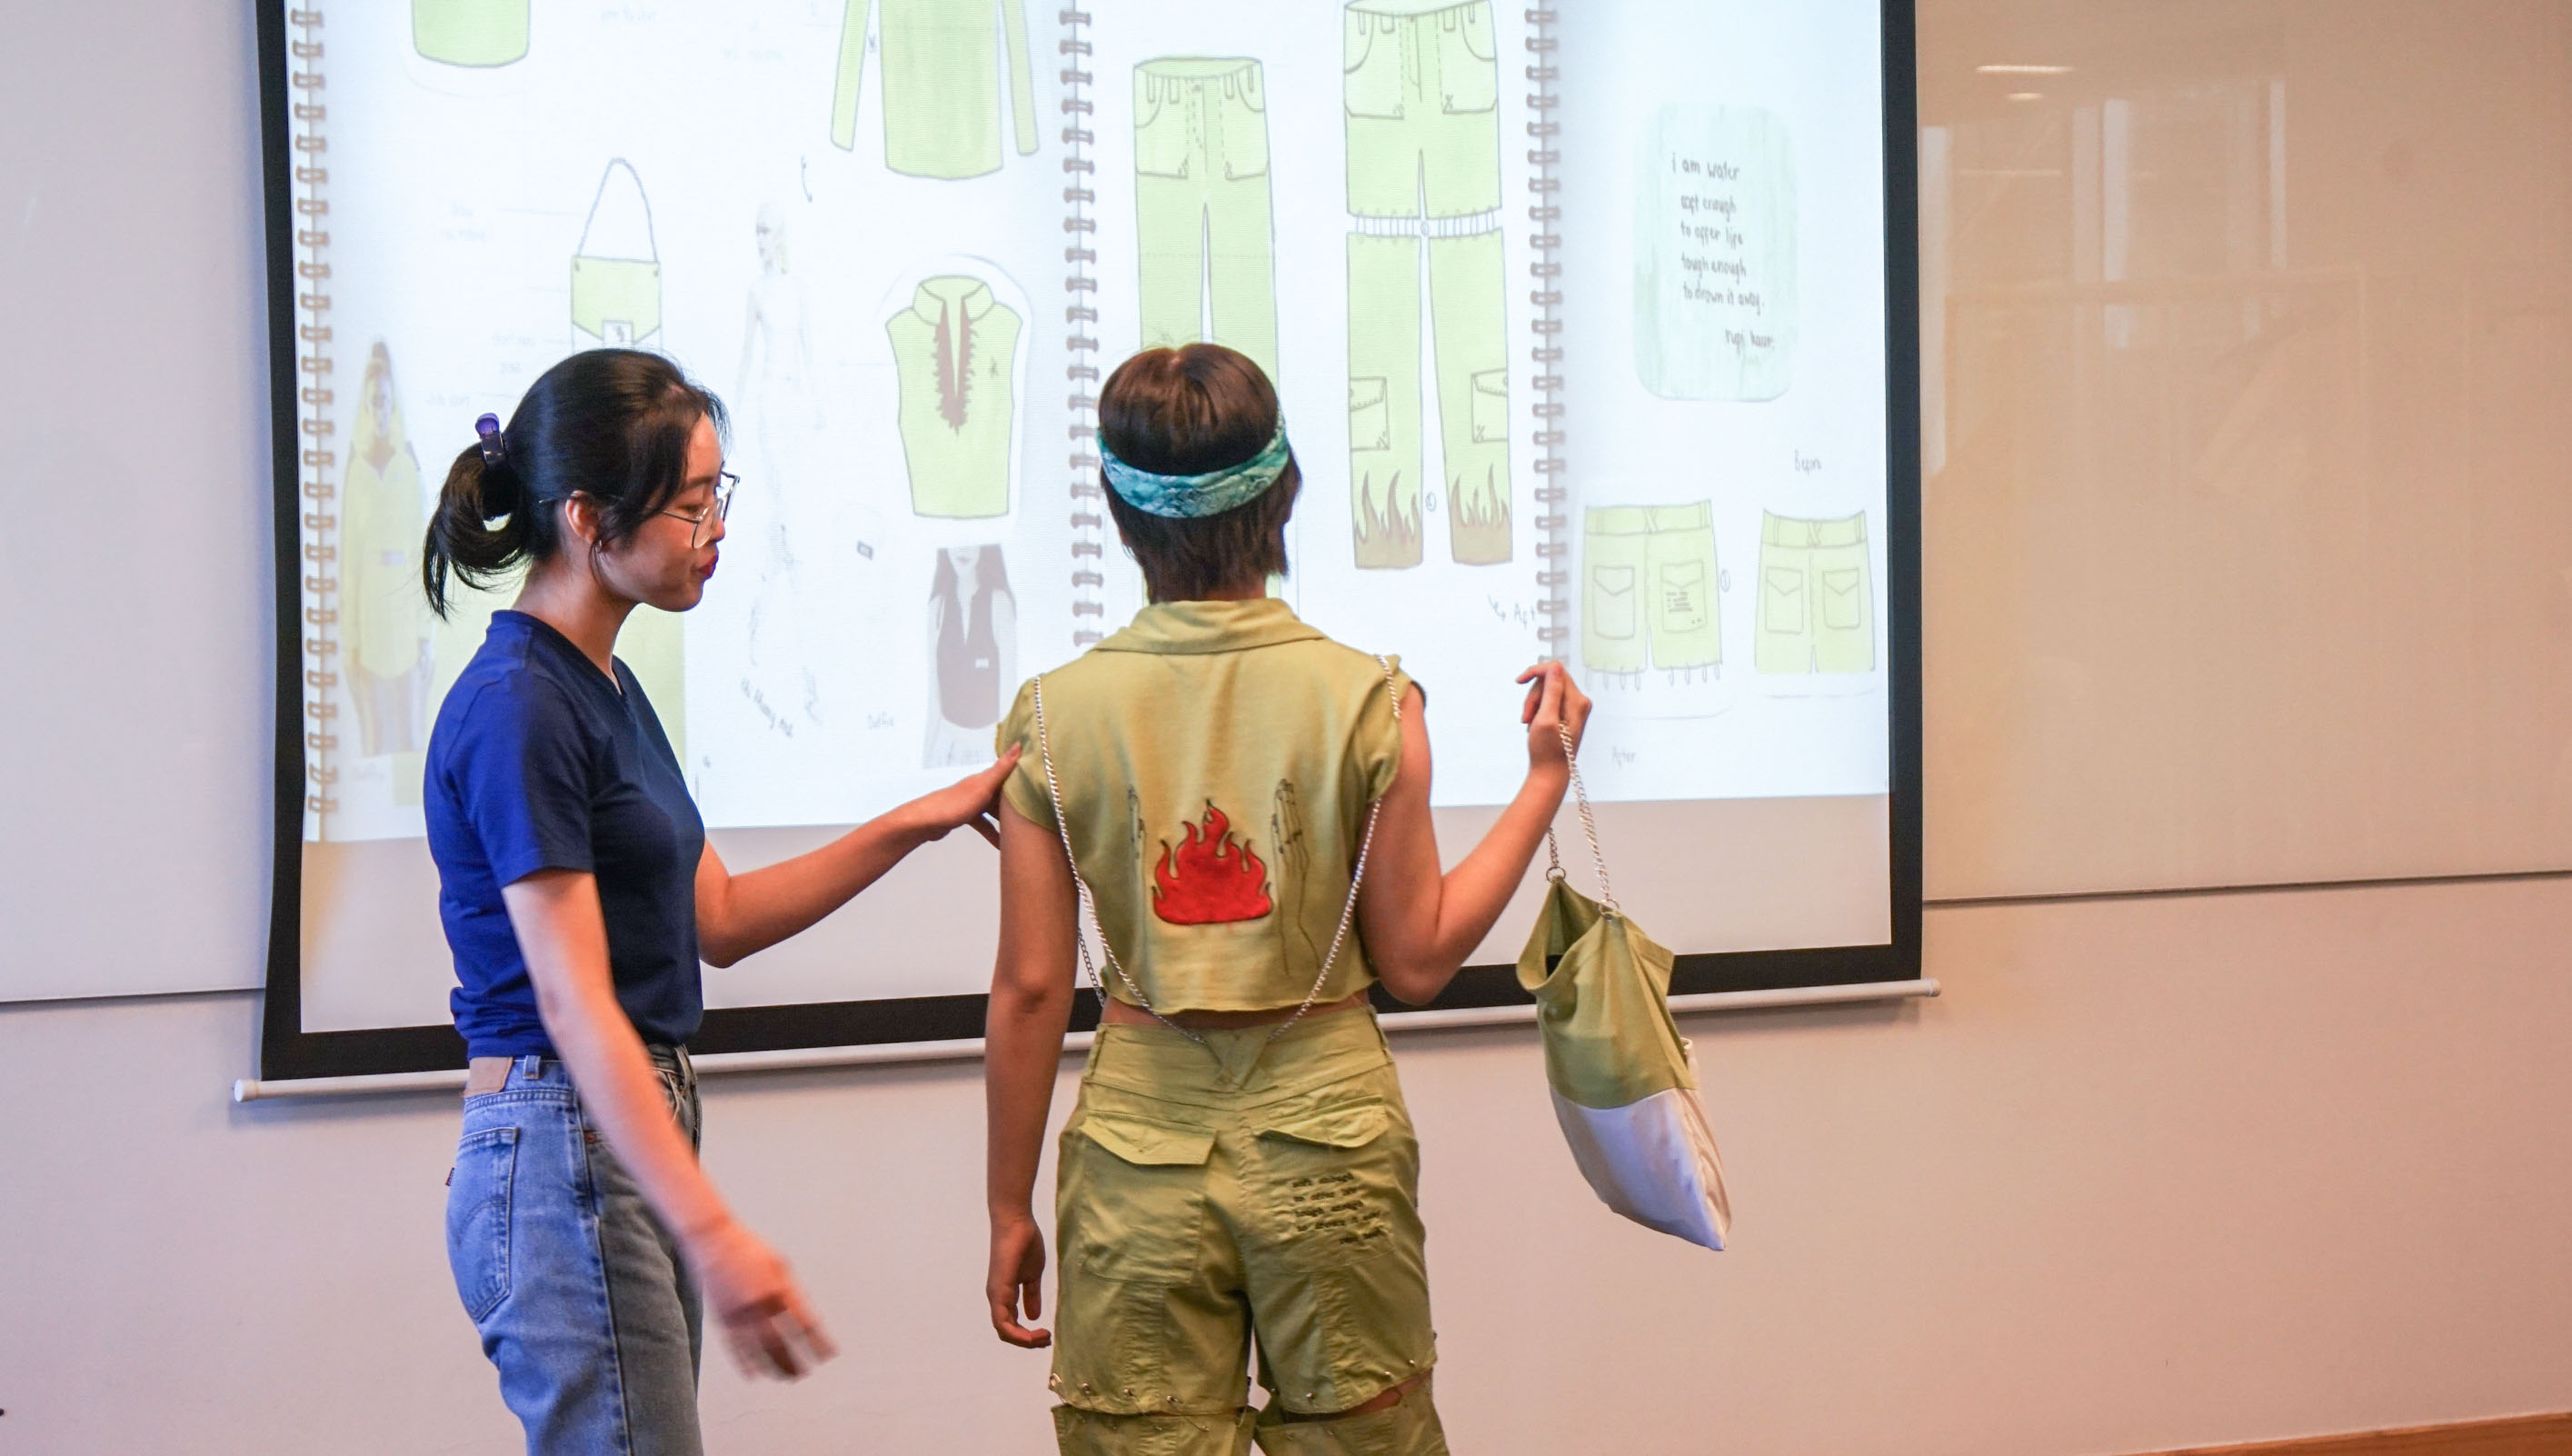 Sinh viên trình bày sản phẩm của mình với đại diện H&M, Trưởng nhóm bộ môn Thiết kế tại RMIT Việt Nam Giáo sư Julia Gaimster, Chủ nhiệm bộ môn Thời trang Nina Yiu giảng viên ngành thời trang Tiến sĩ Rajkishore Nayak.